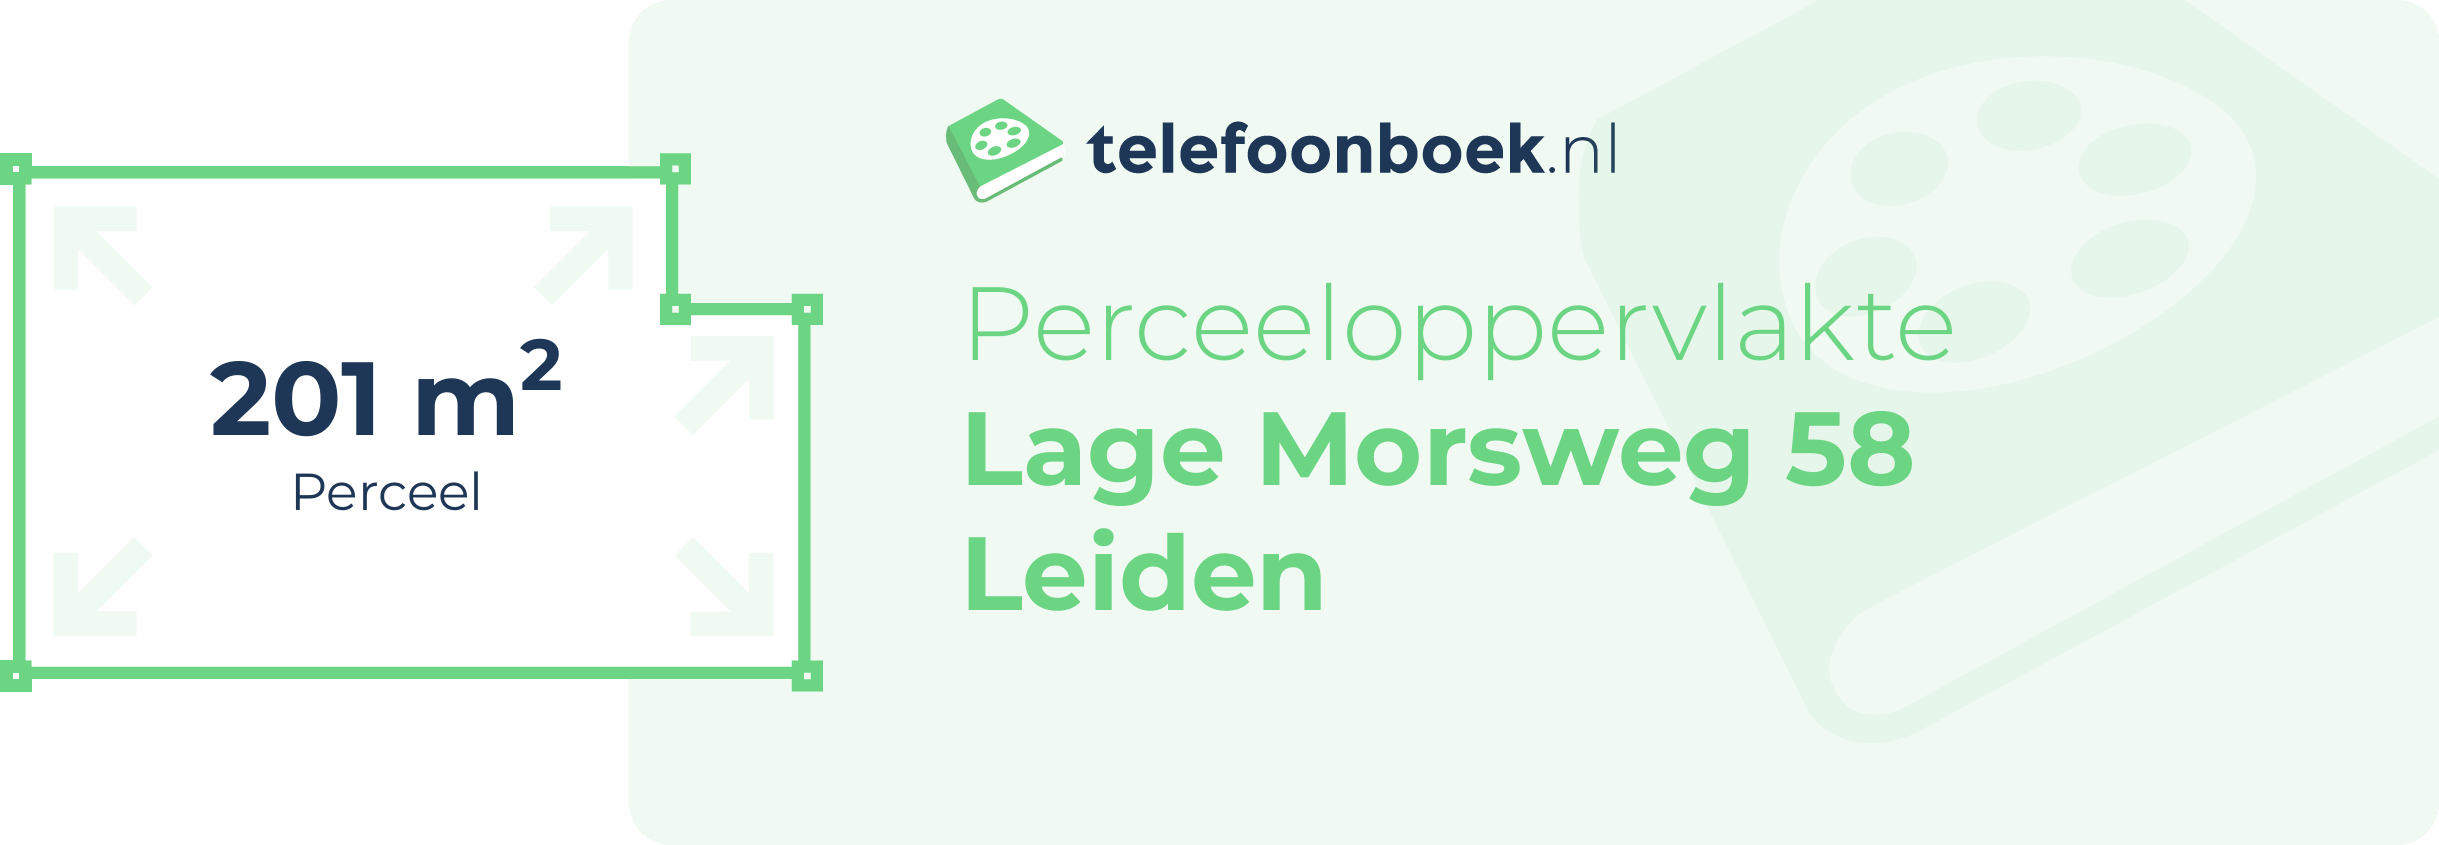 Perceeloppervlakte Lage Morsweg 58 Leiden